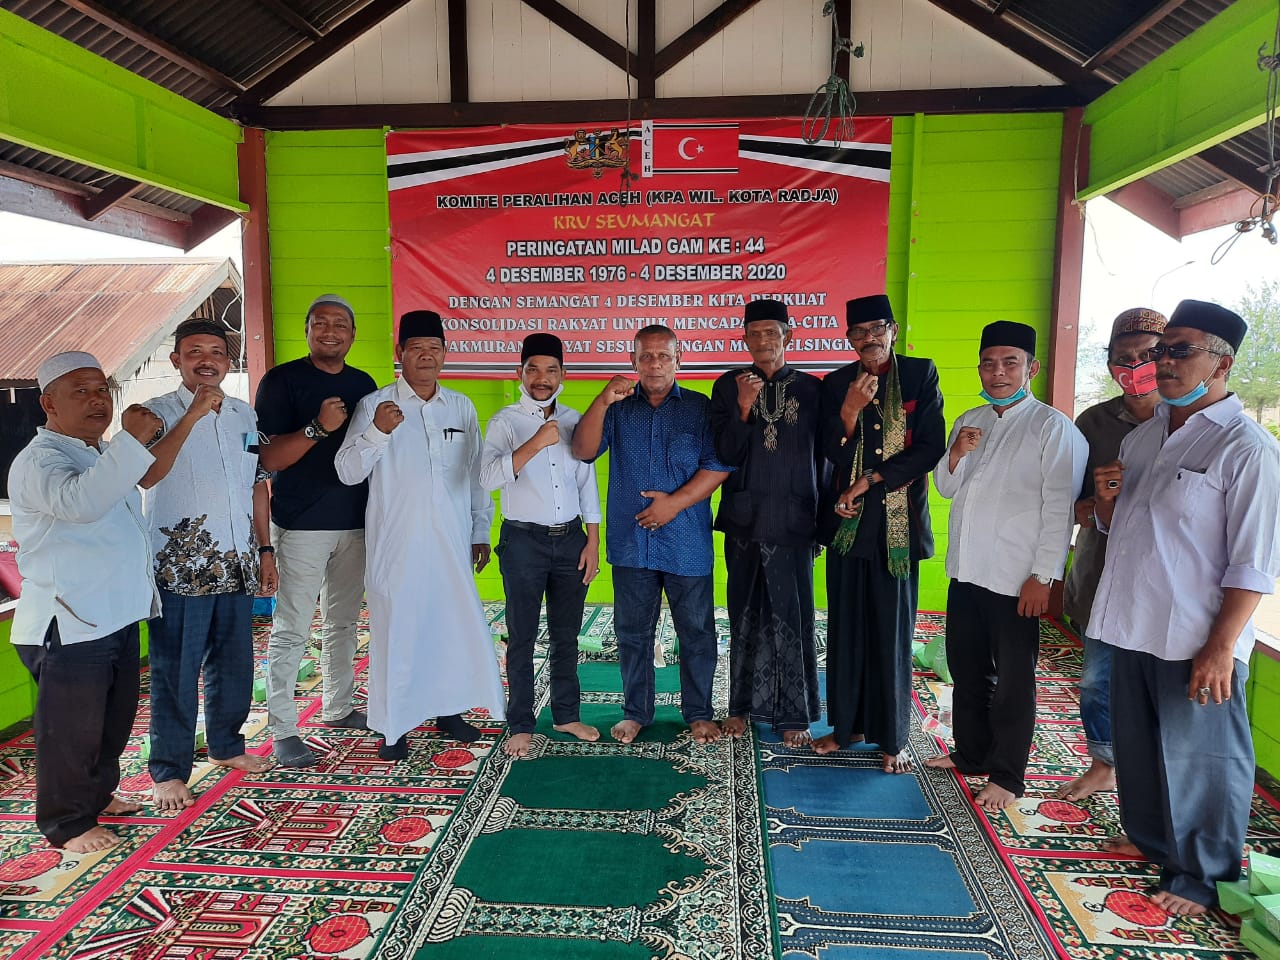 KPA Kota Radja Peringati Milad GAM ke 44: Semoga Perdamaian Aceh Tetap Terjaga